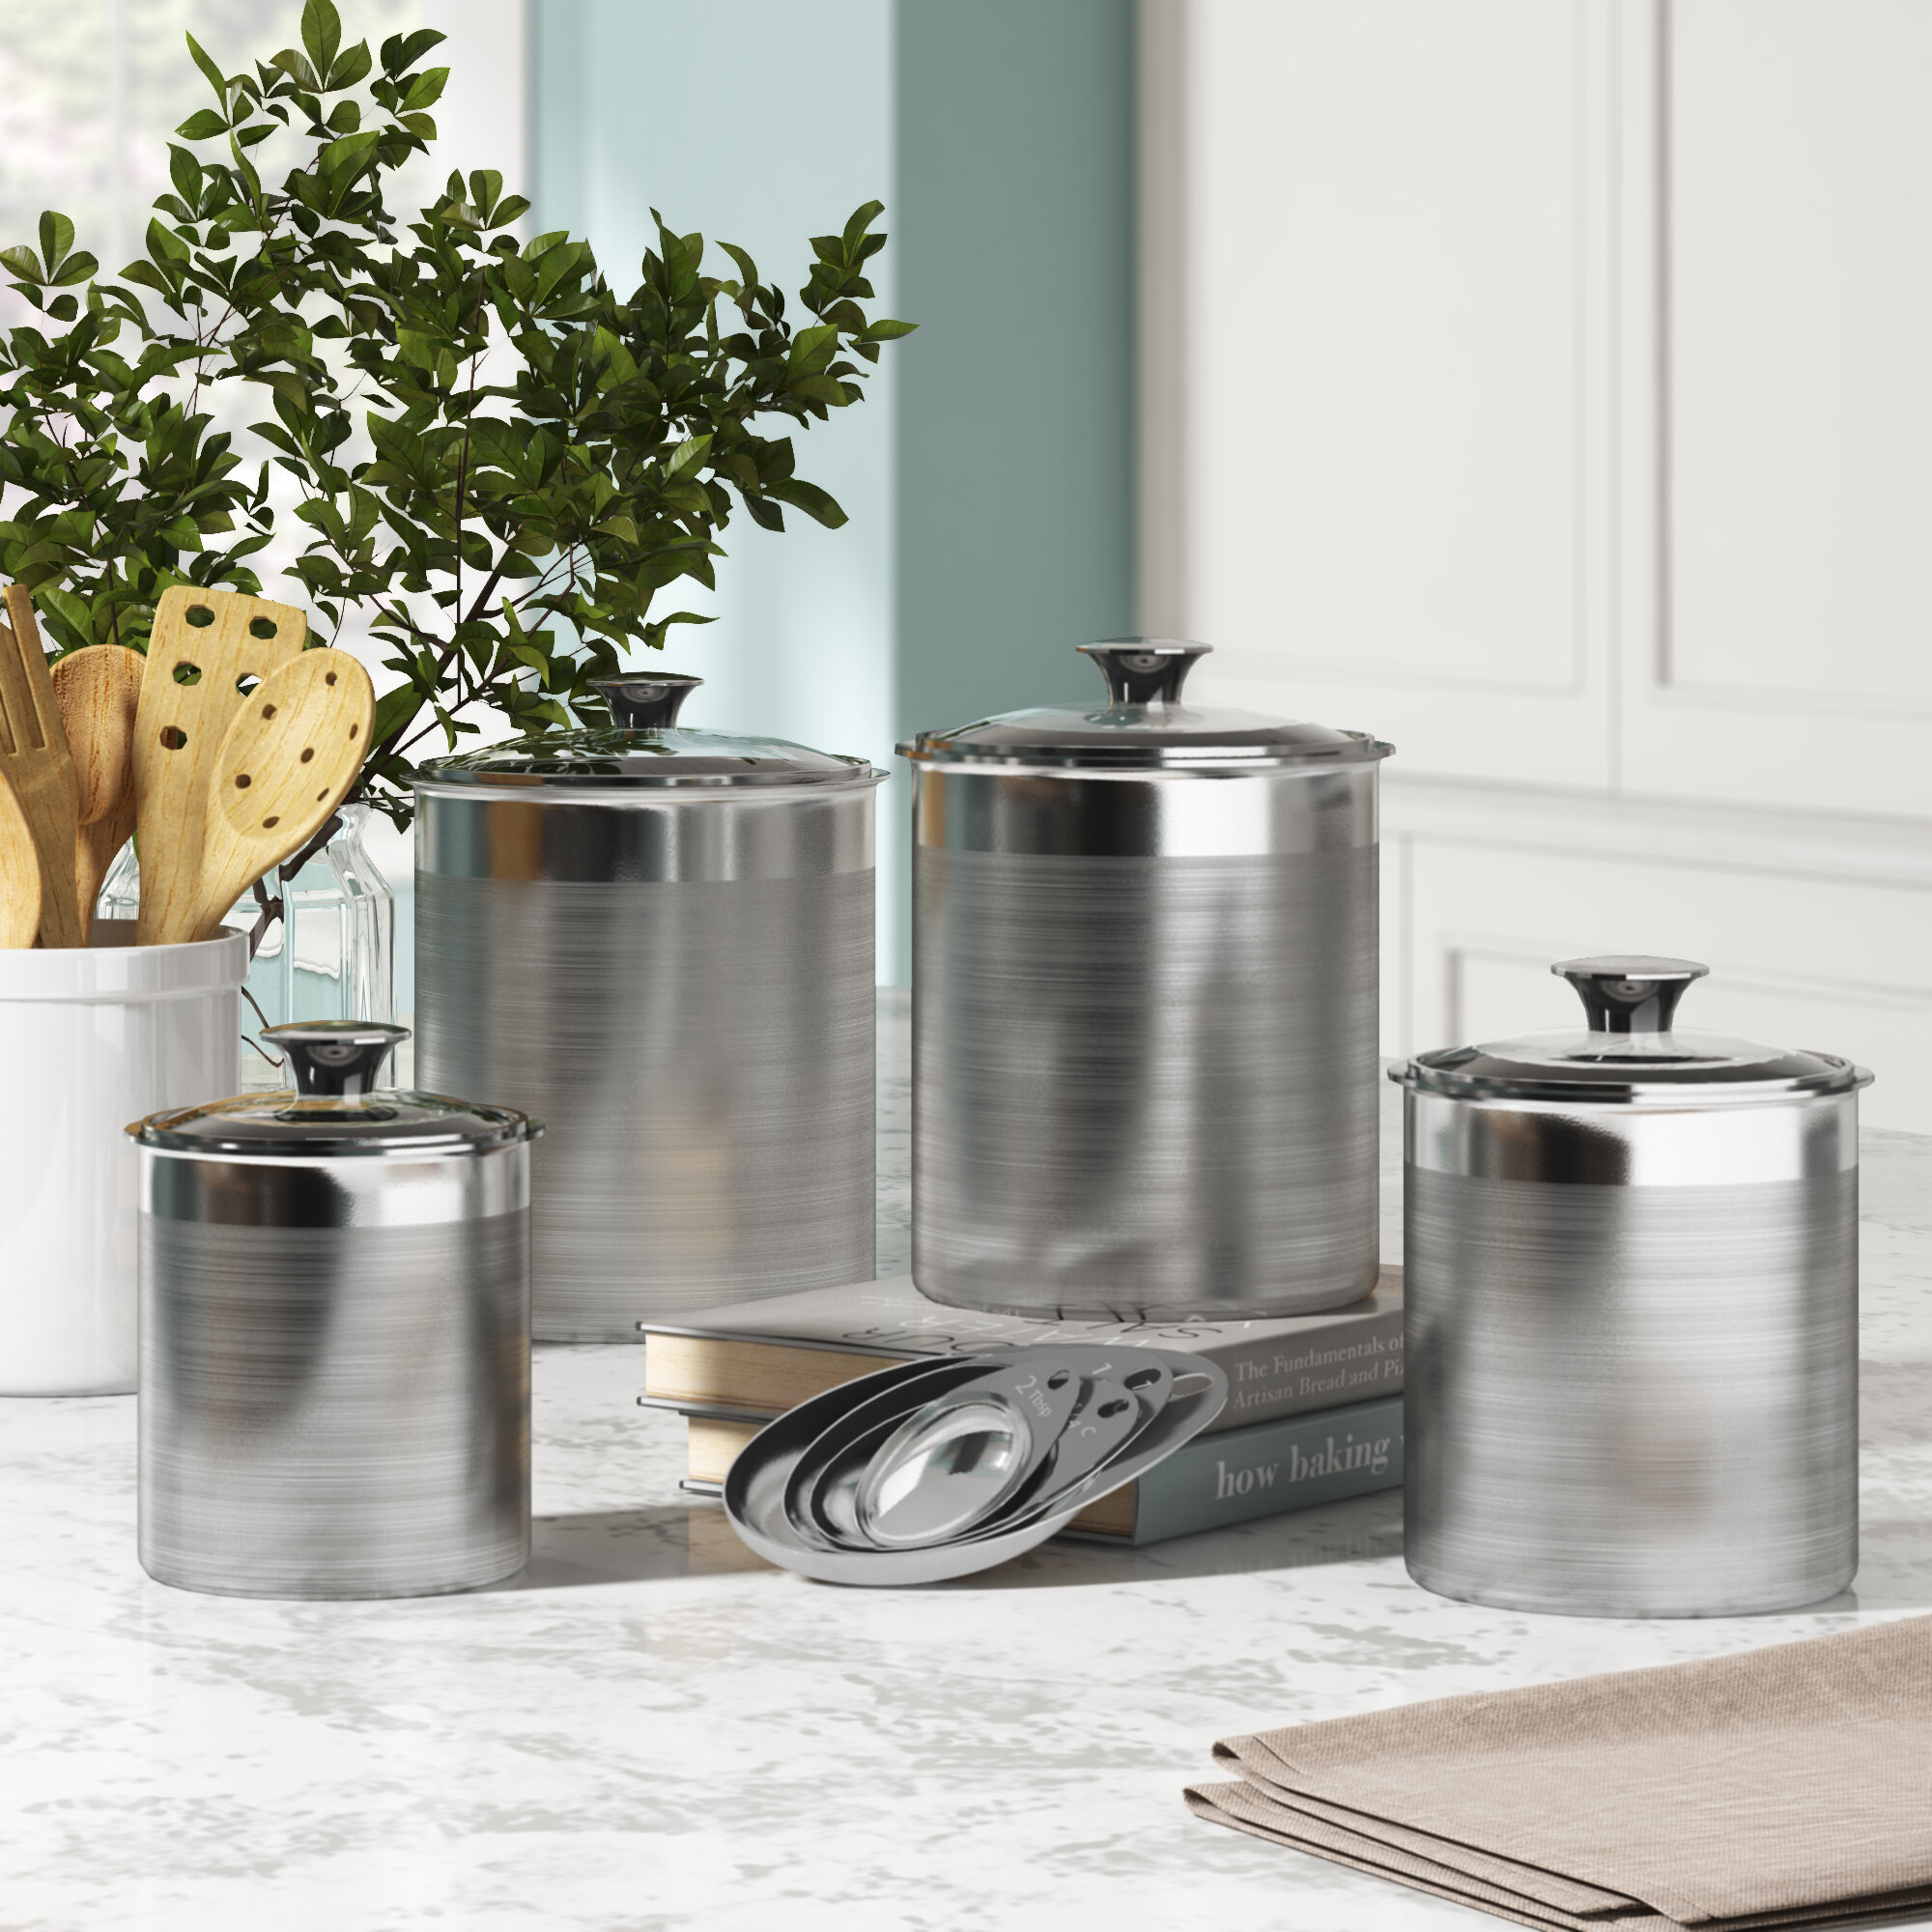 https://assets.wfcdn.com/im/91879261/compr-r85/1268/126830706/tramontina-gourmet-8-piece-kitchen-canister-set.jpg